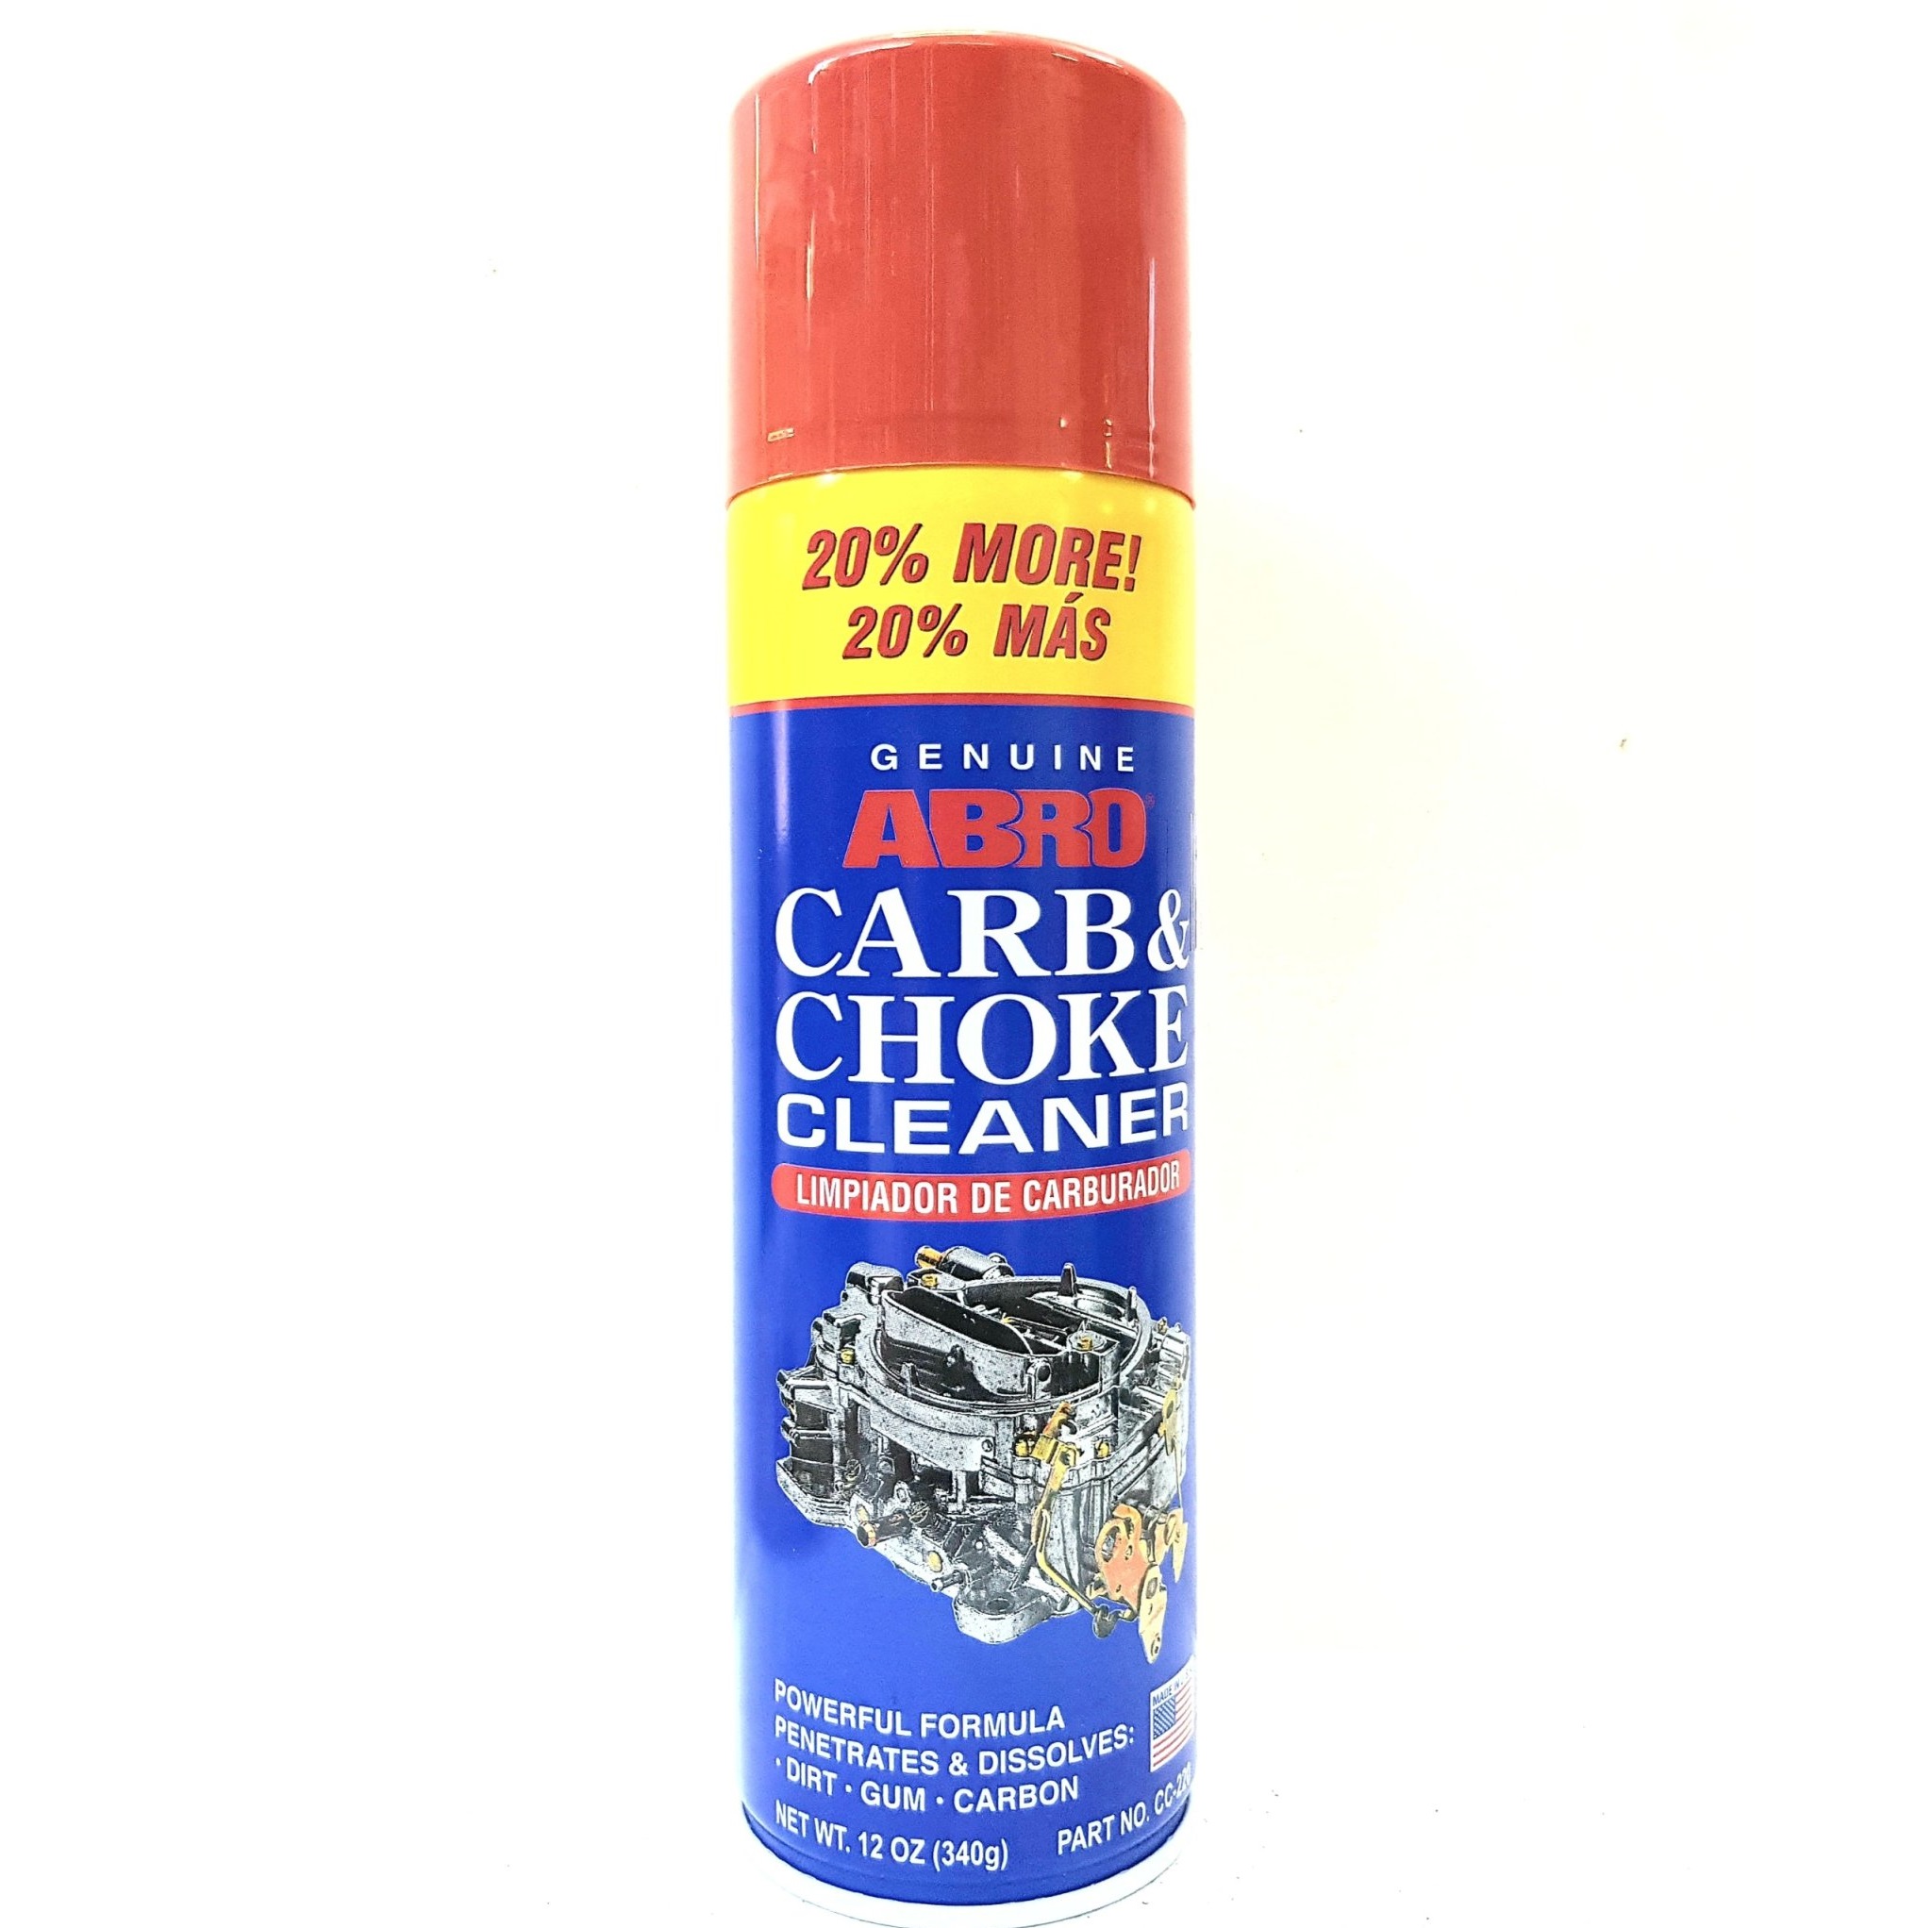 HCMChai xịt súc bình xăng con Abro carb & choke cleaner 340g